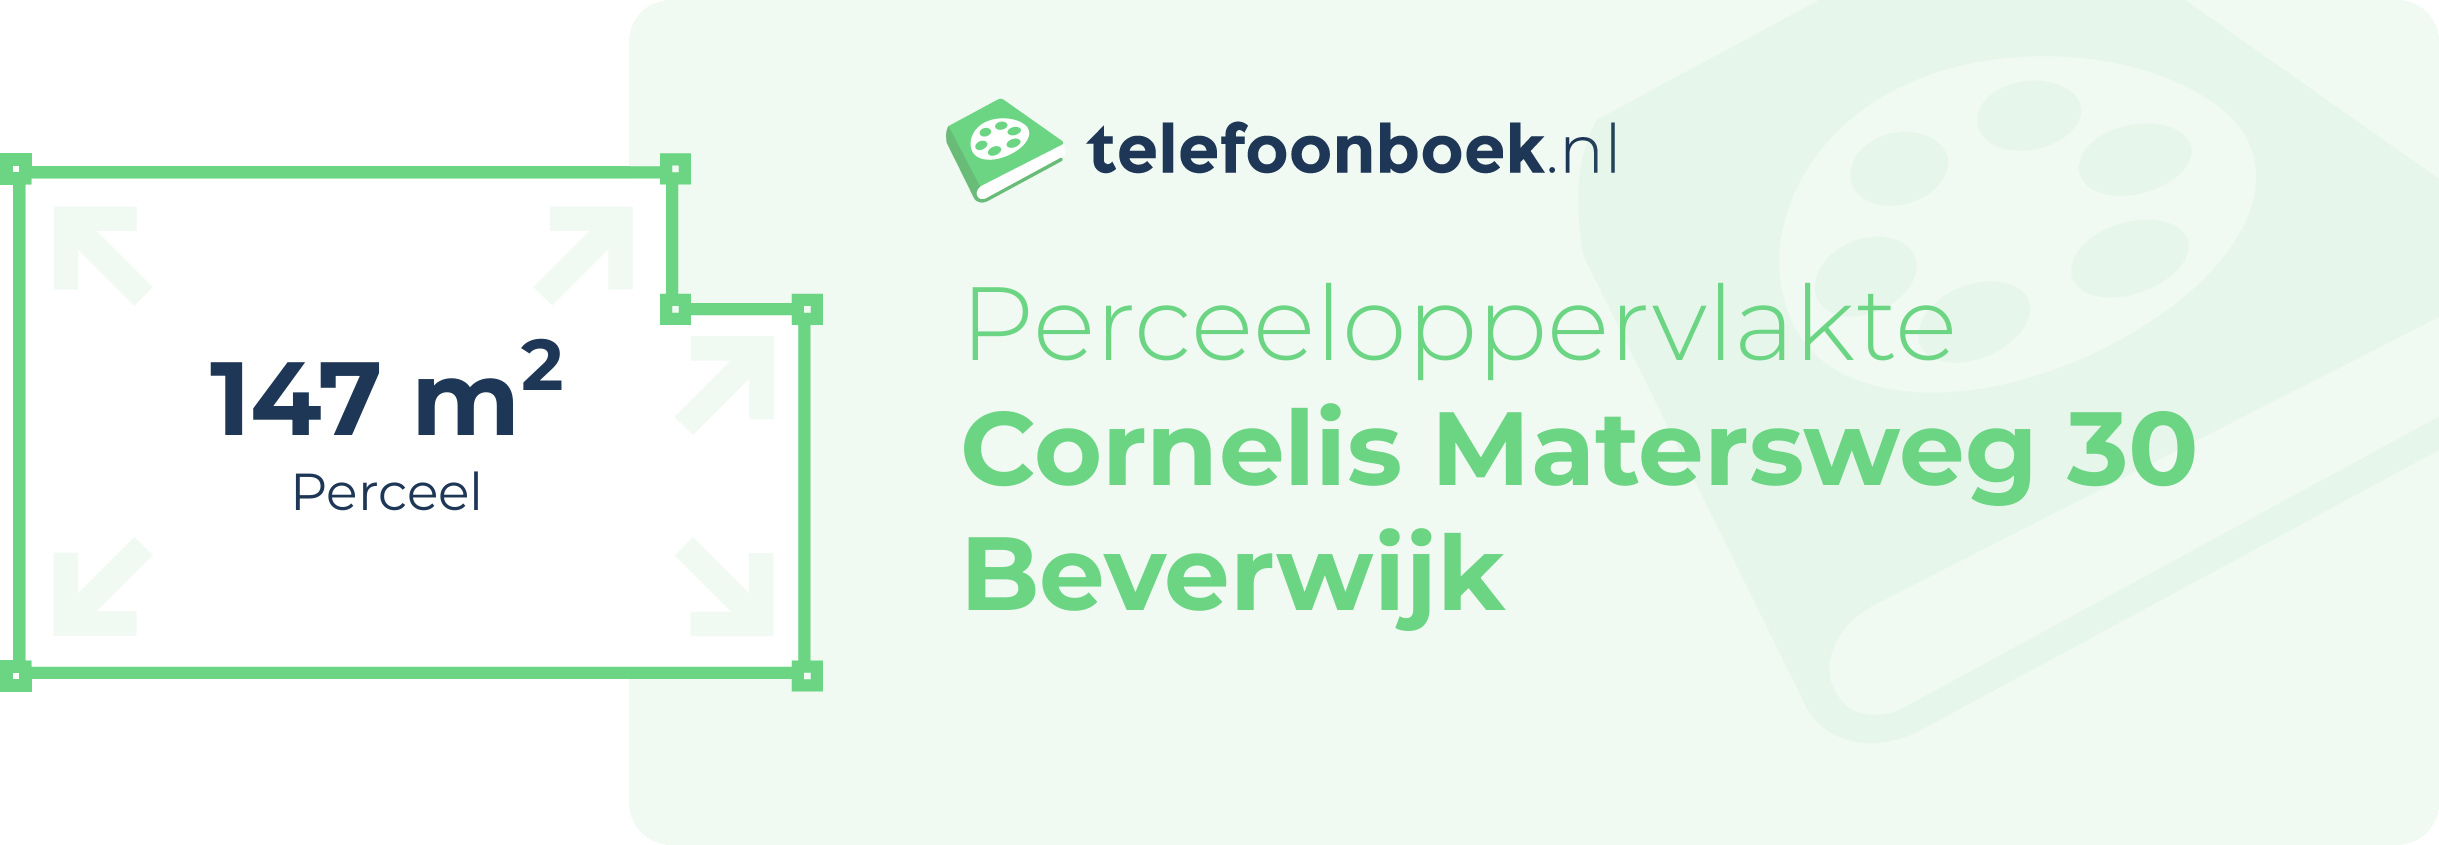 Perceeloppervlakte Cornelis Matersweg 30 Beverwijk